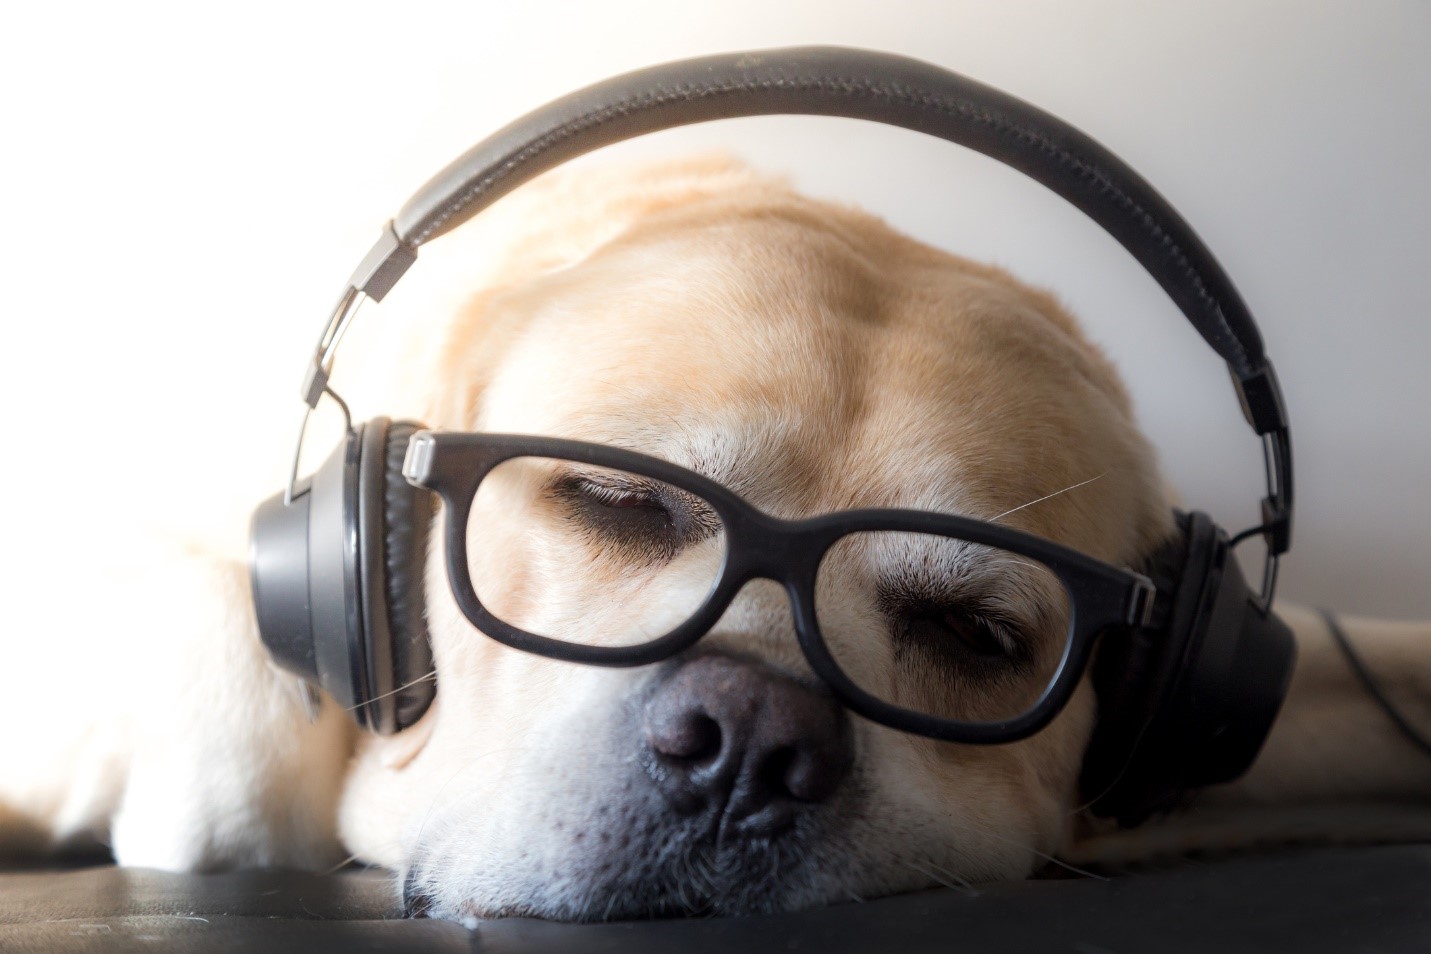 موسیقی و آهنگ های مخصوص سگها + دلایل استفاده و مزایا